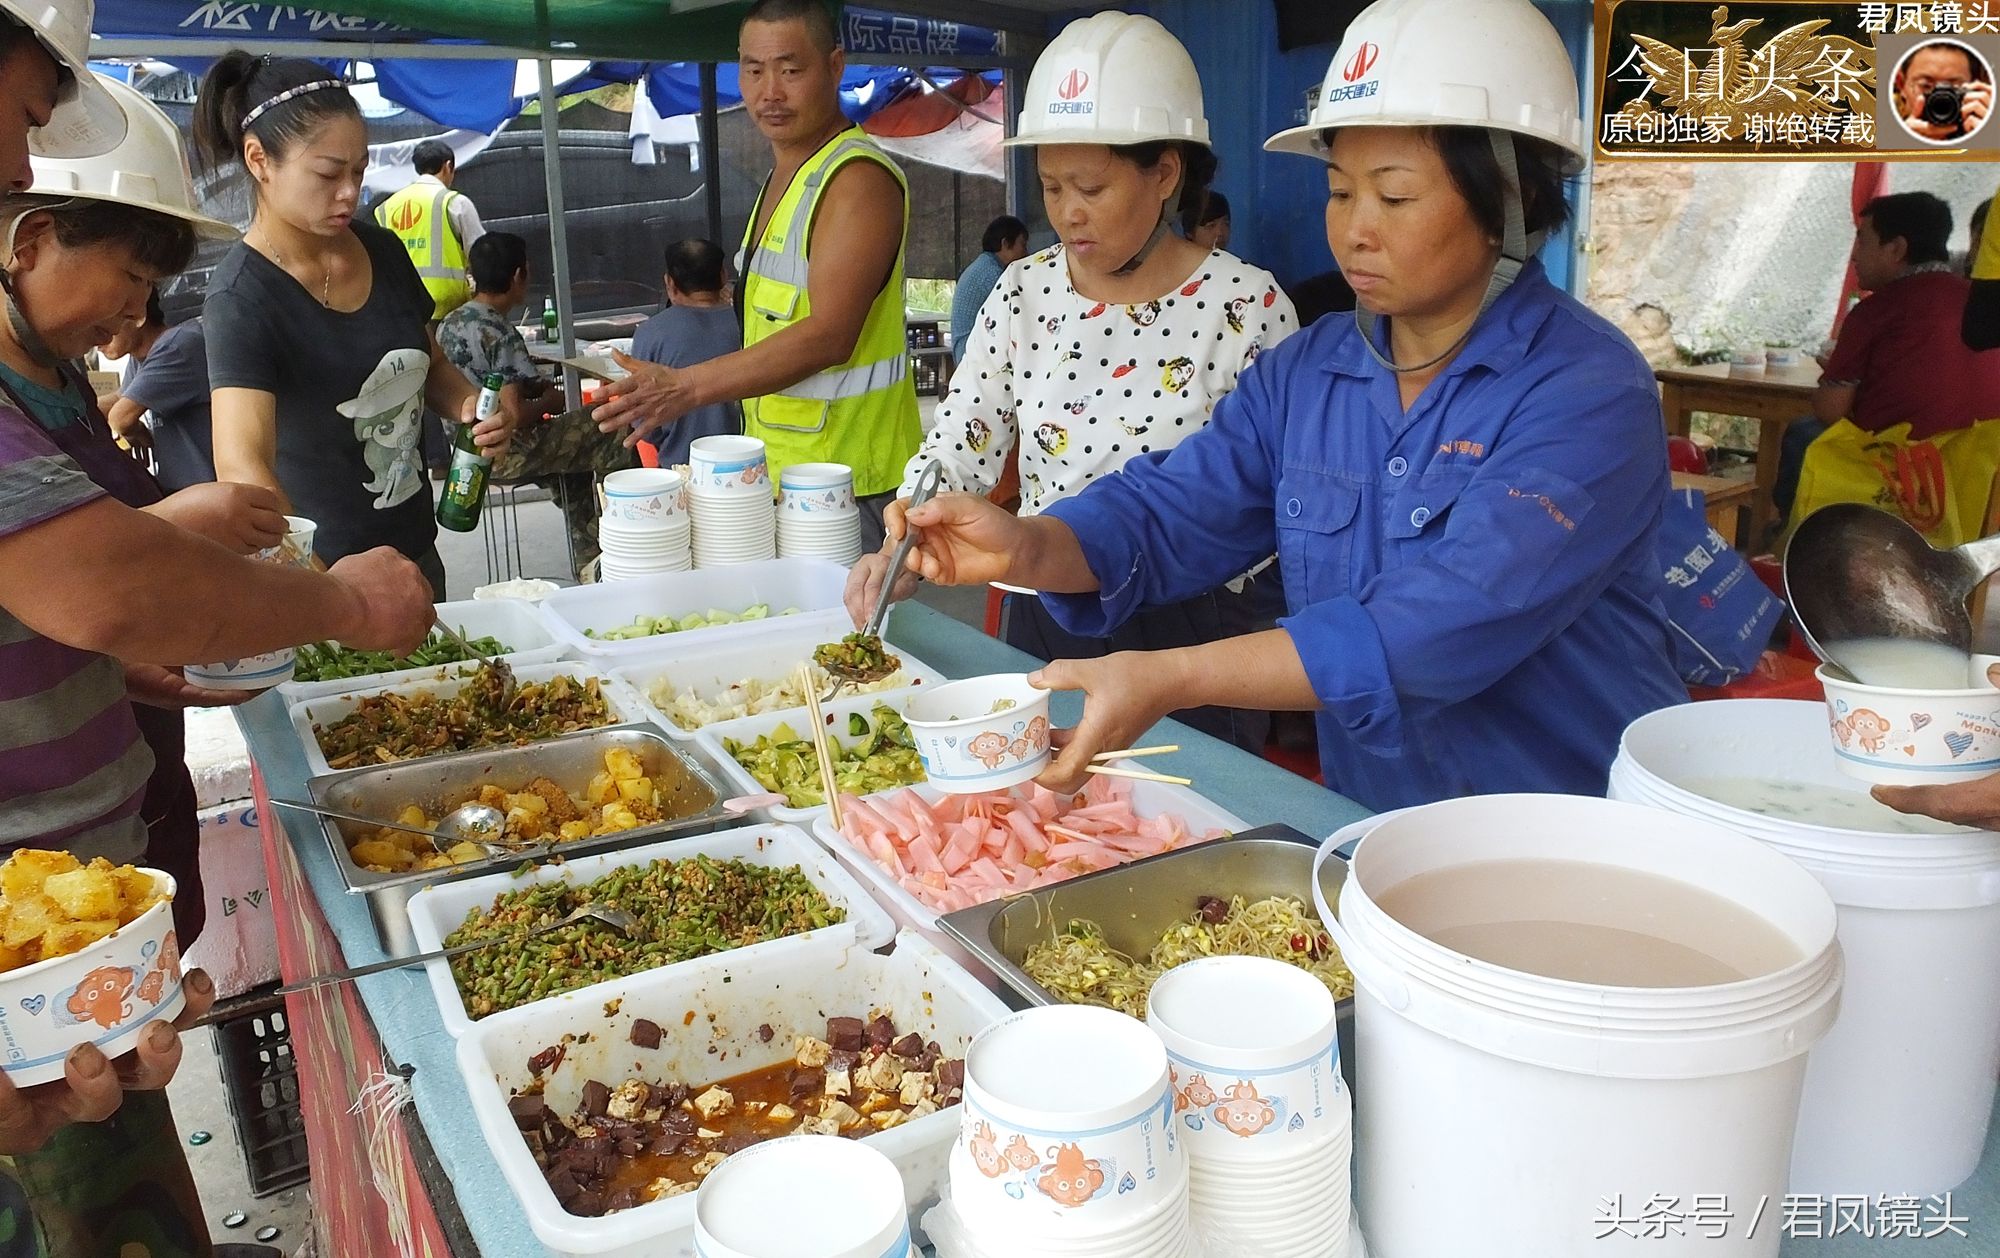 湖北宜昌:农民工在工地食堂吃自助餐,不限量,10菜2汤10元钱!